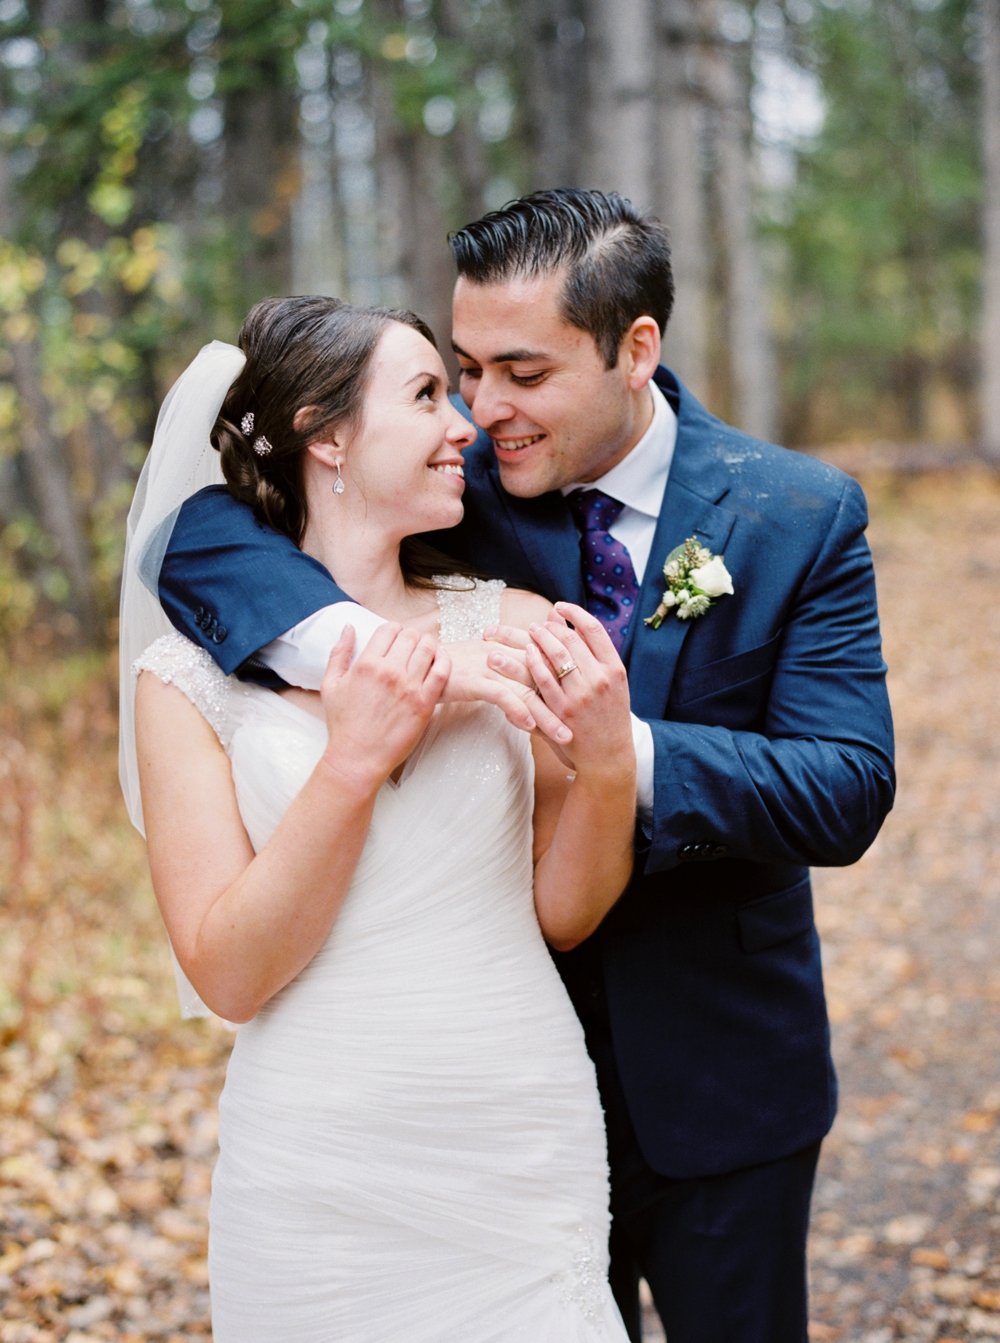 Canmore Wedding Photographers | Calgary Wedding Photography | Mountain Wedding